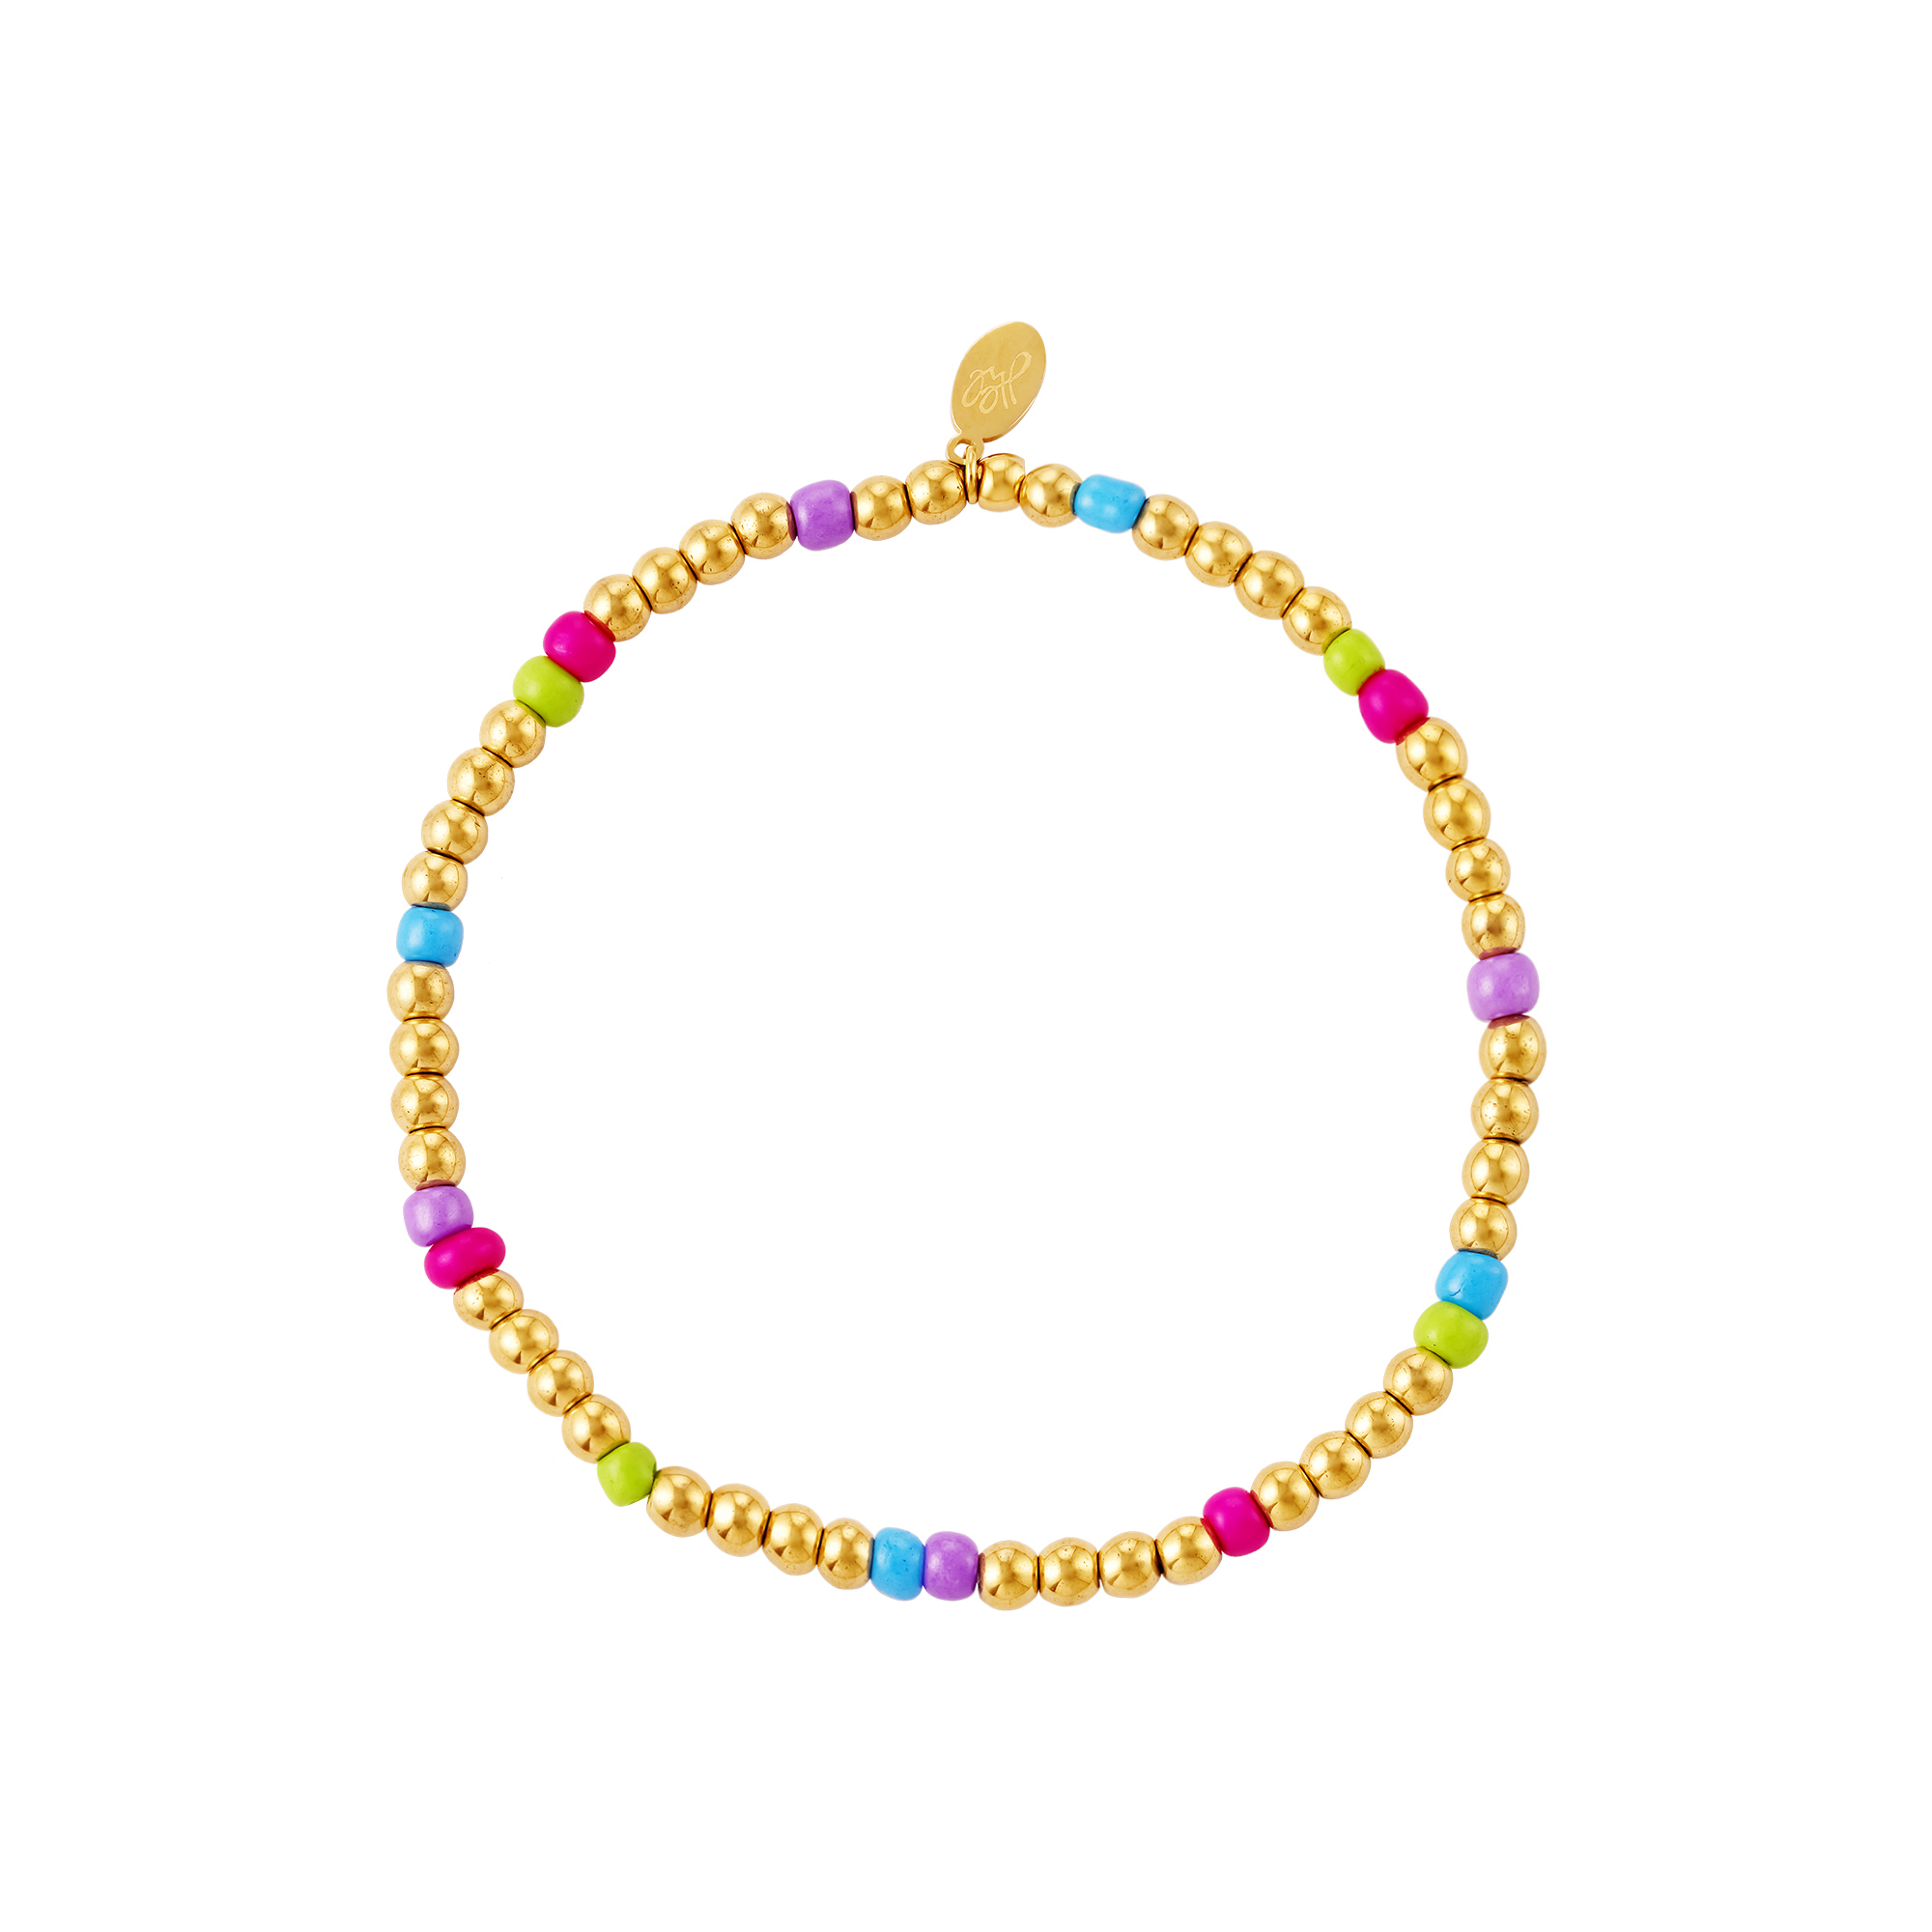 Kleurrijke kralen armband - #summergirls collection